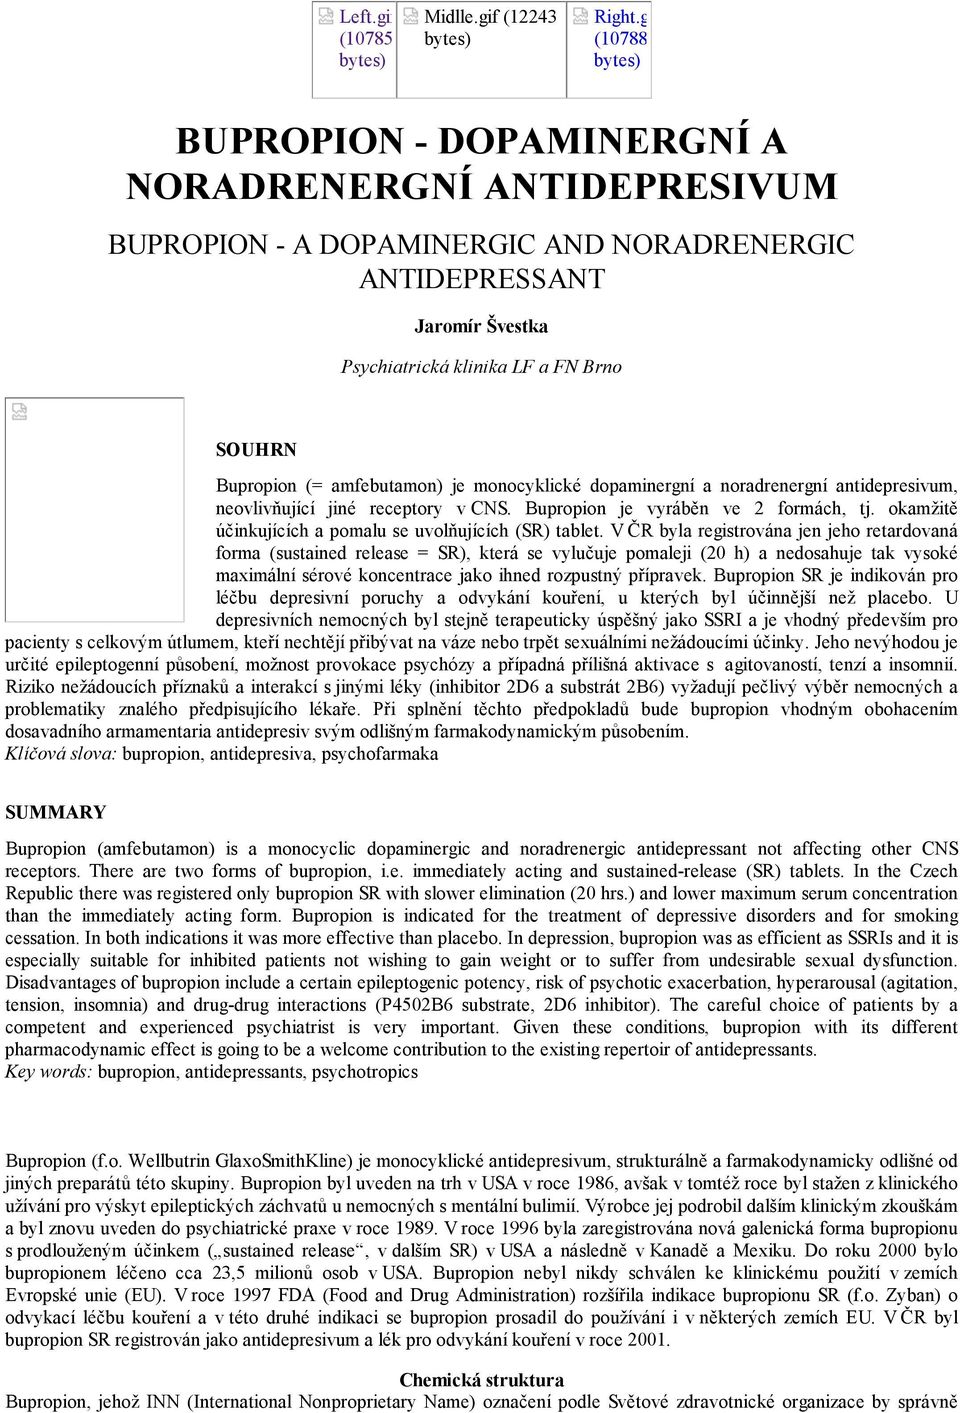 Bupropion (= amfebutamon) je monocyklické dopaminergní a noradrenergní antidepresivum, neovlivňující jiné receptory v CNS. Bupropion je vyráběn ve 2 formách, tj.